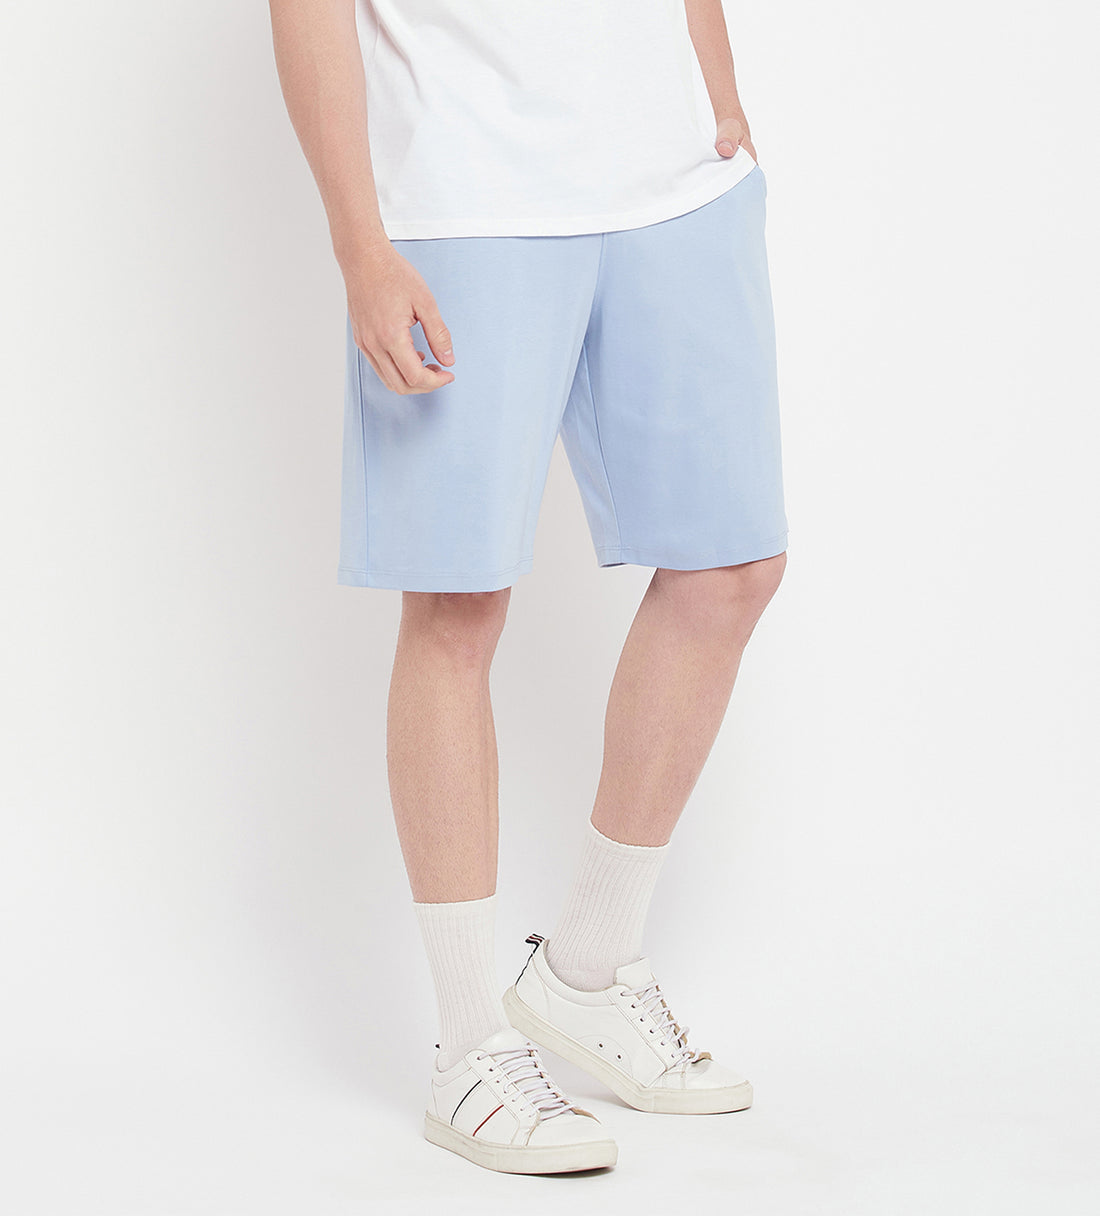 Sky Blue Obsession Regular Fit Shorts for Men - EDRIO